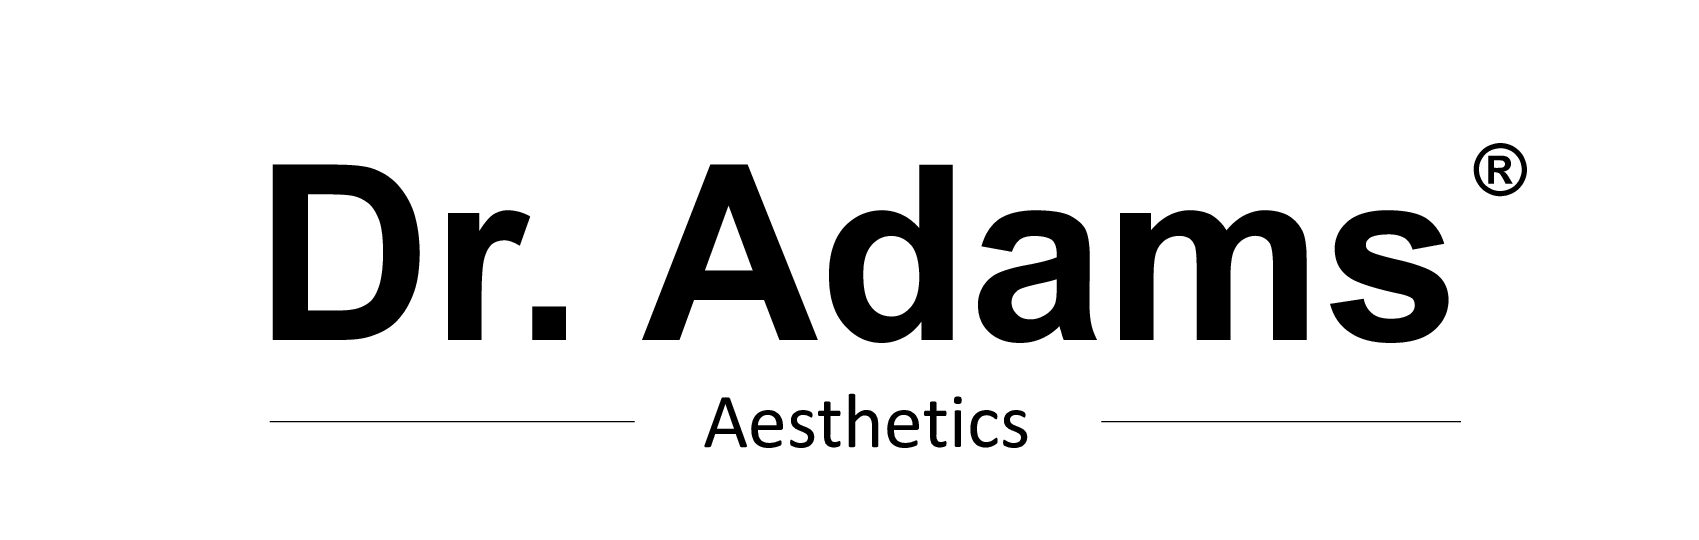 Dr Adams logo